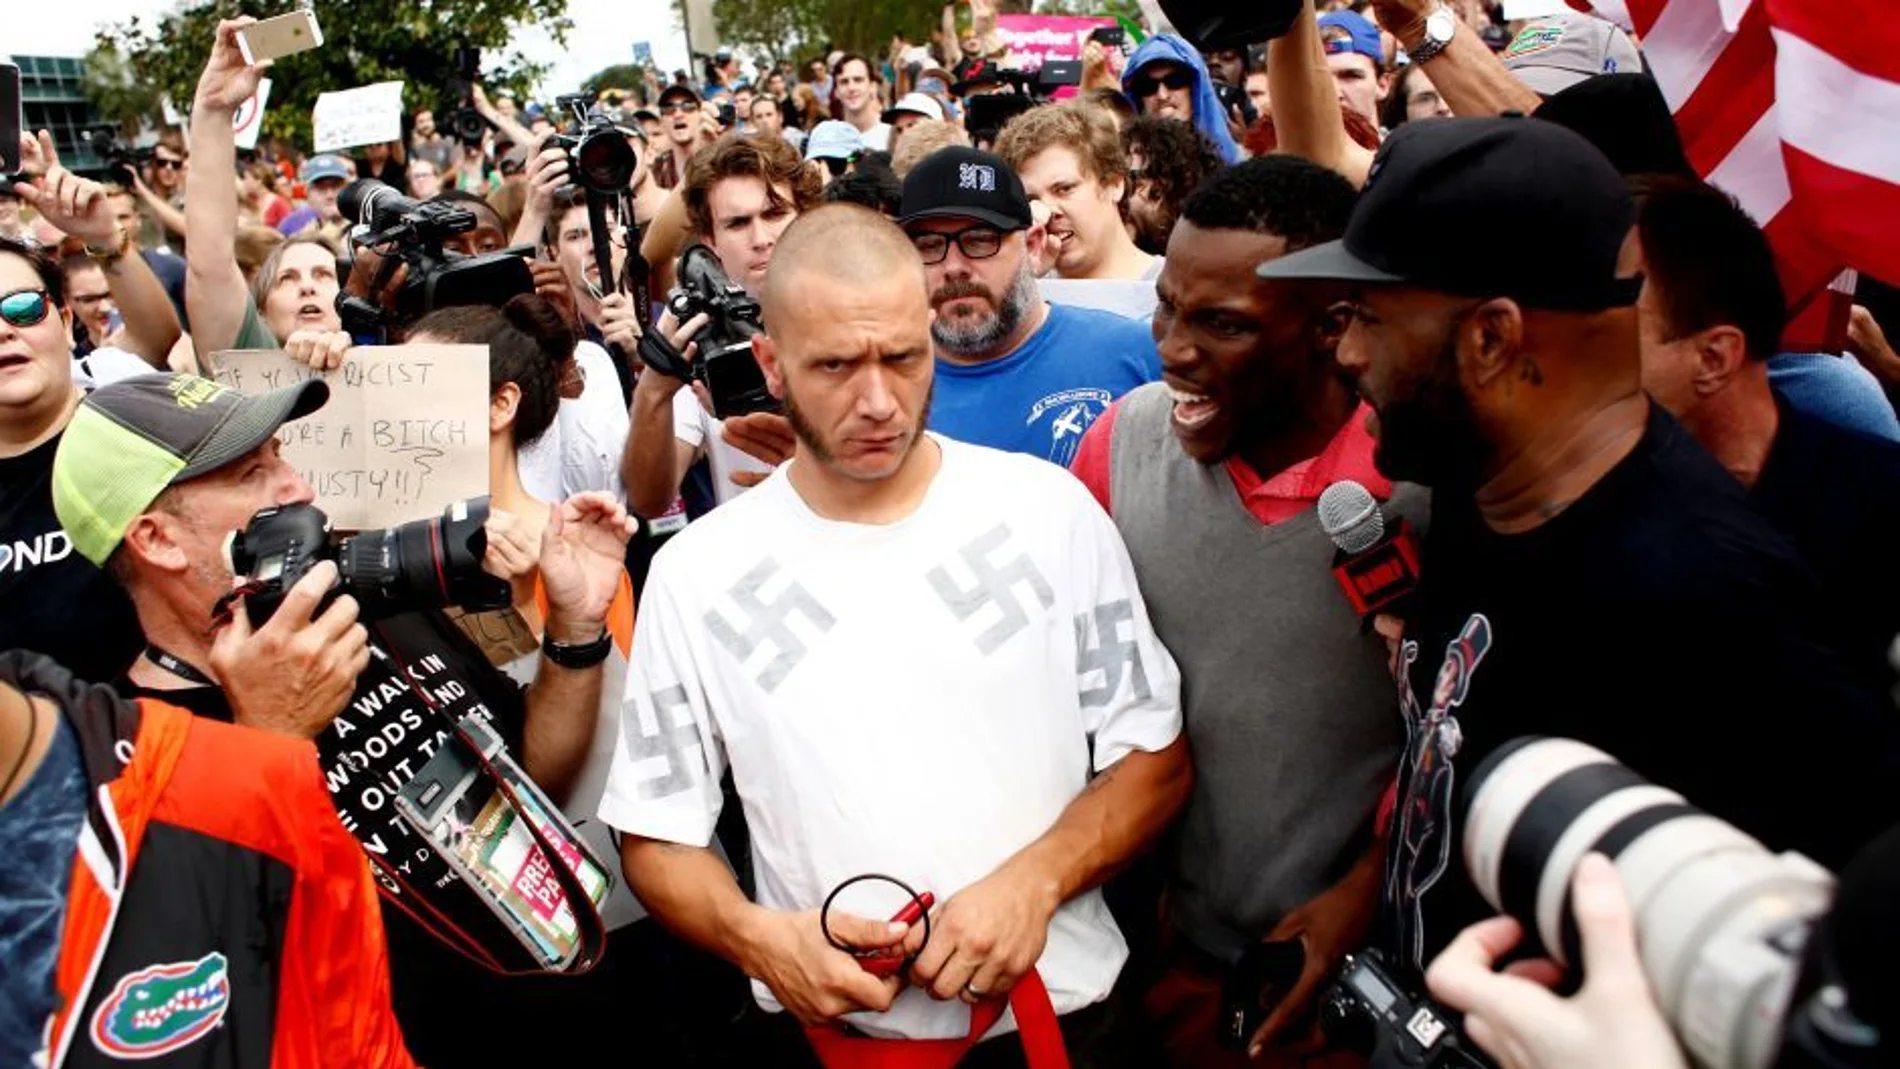 Imagen del neonazi durante la protesta antifascista en Florida